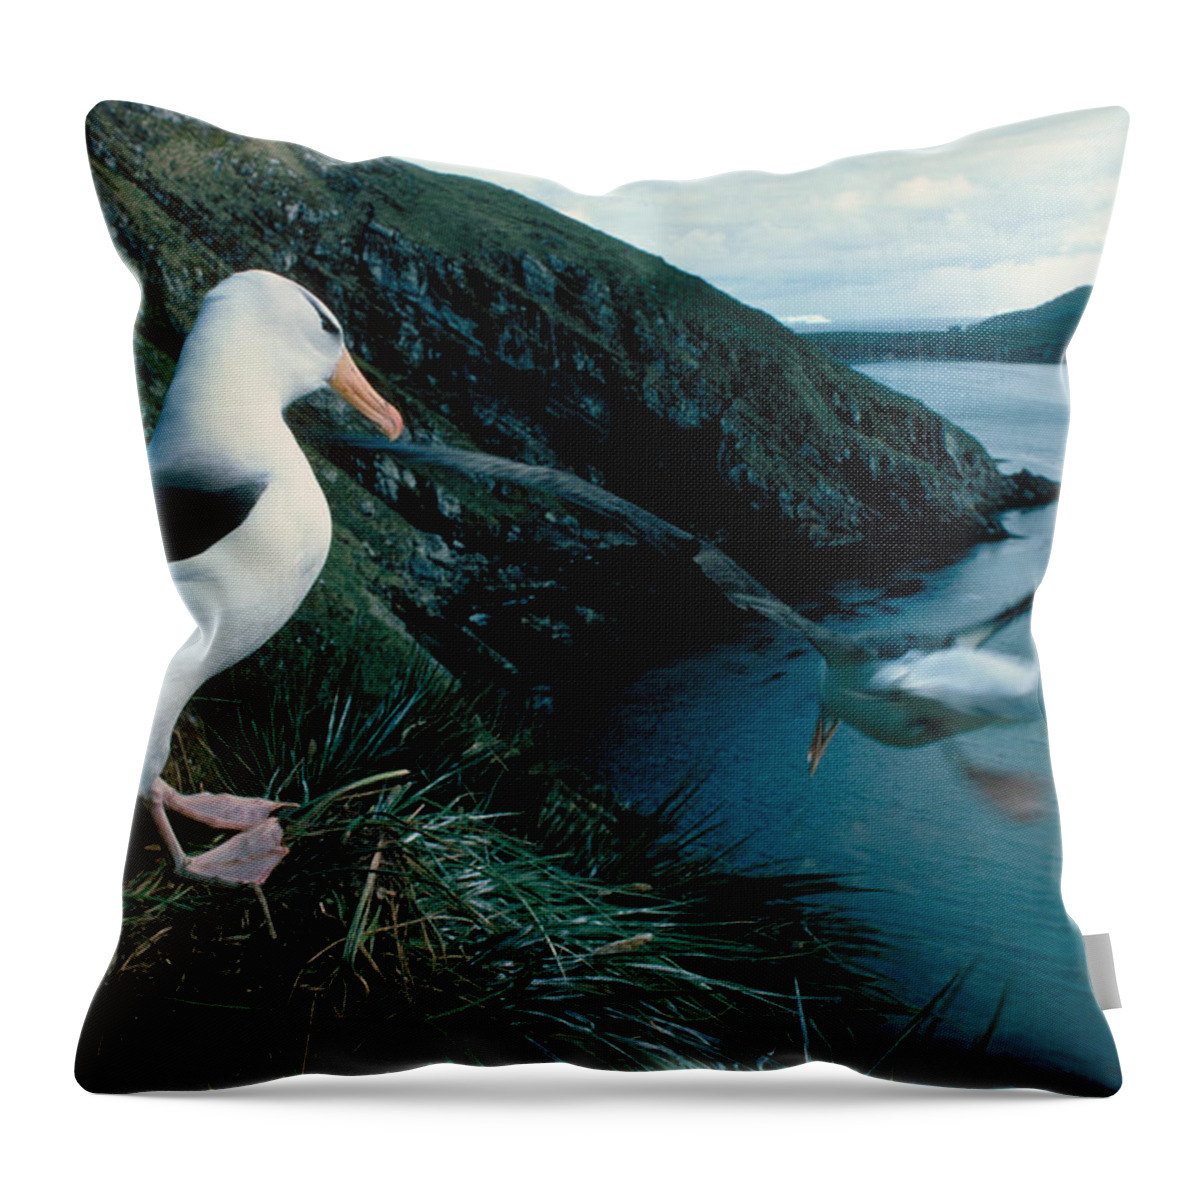 Albatross Throw Pillow featuring the photograph Black-browed Albatross by Robert Hernandez